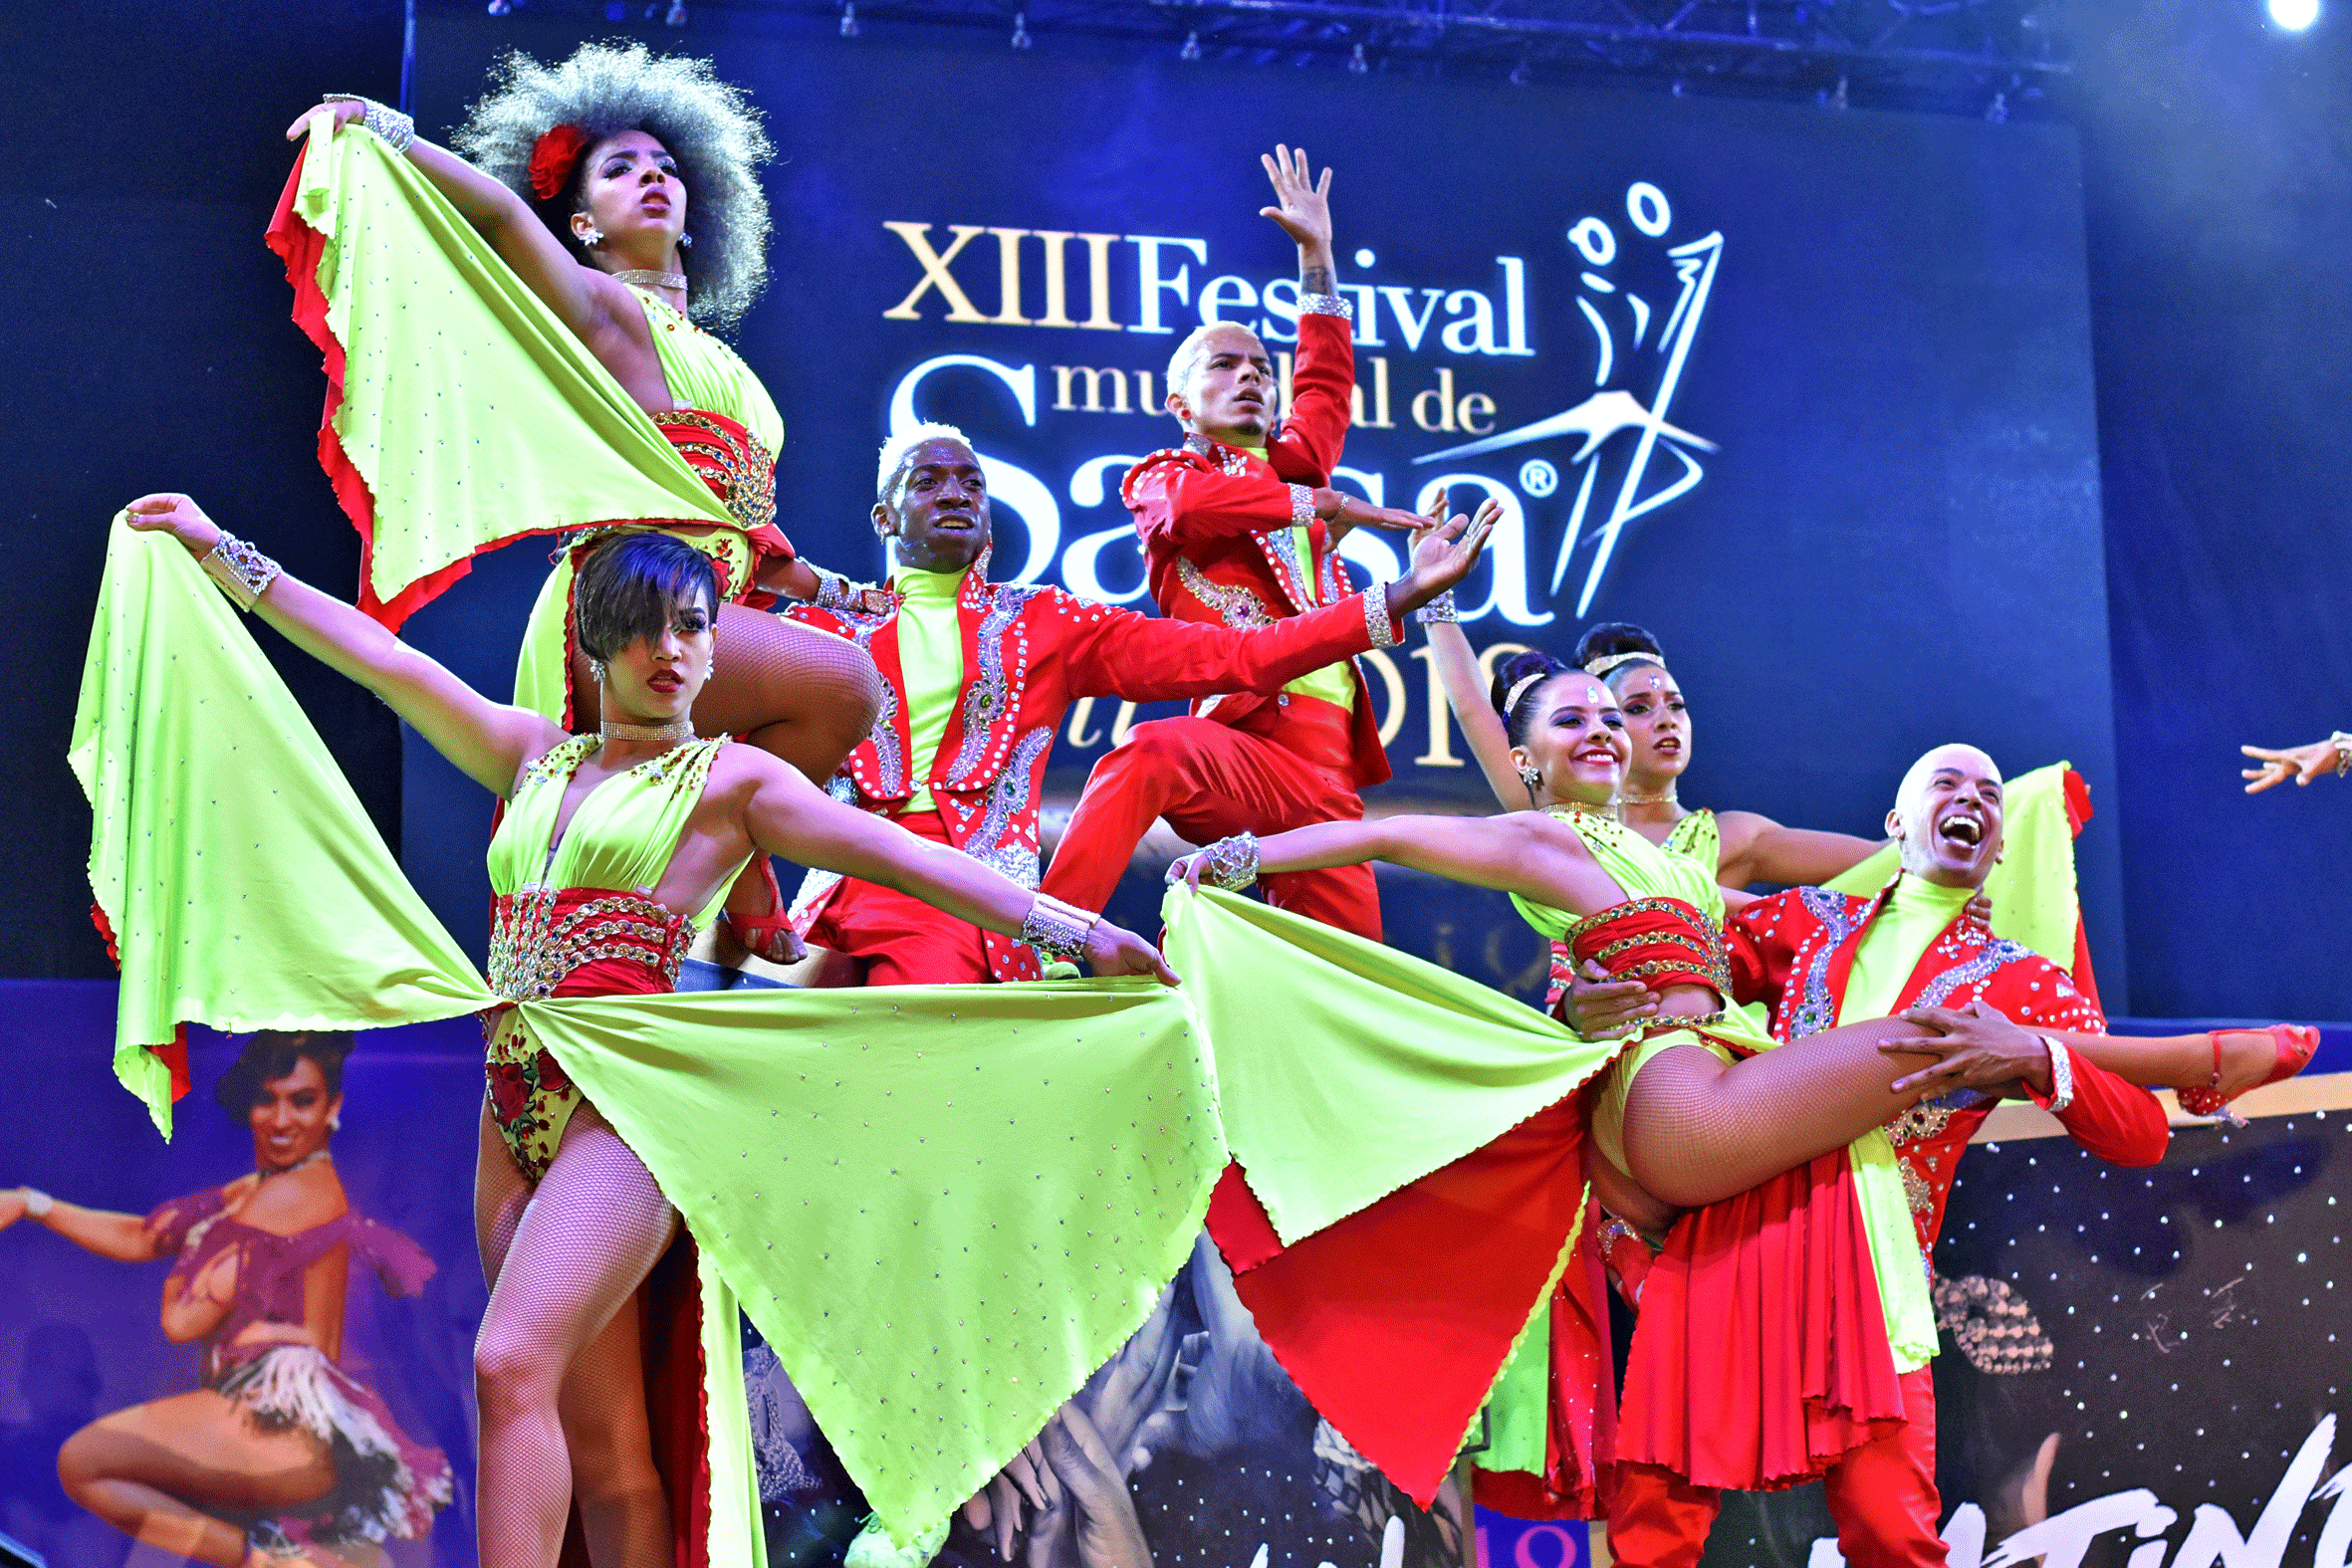 ¡El XIII Festival Mundial de Salsa ya tiene sus ganadores 2018!